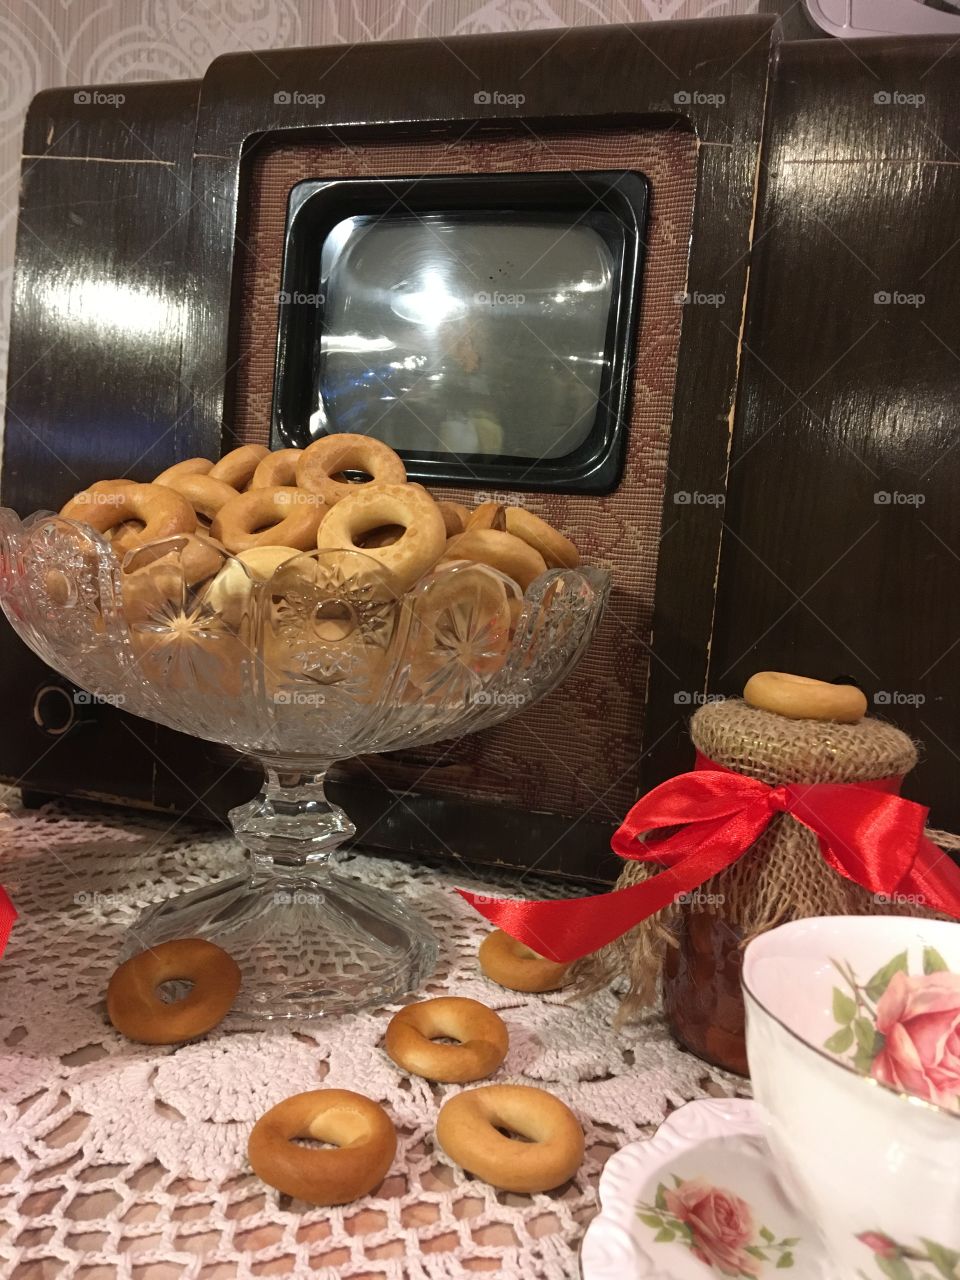 The vintage kitchen decoration. Old TV set, bagels, a jam jar and tea cup. Vintage background. 